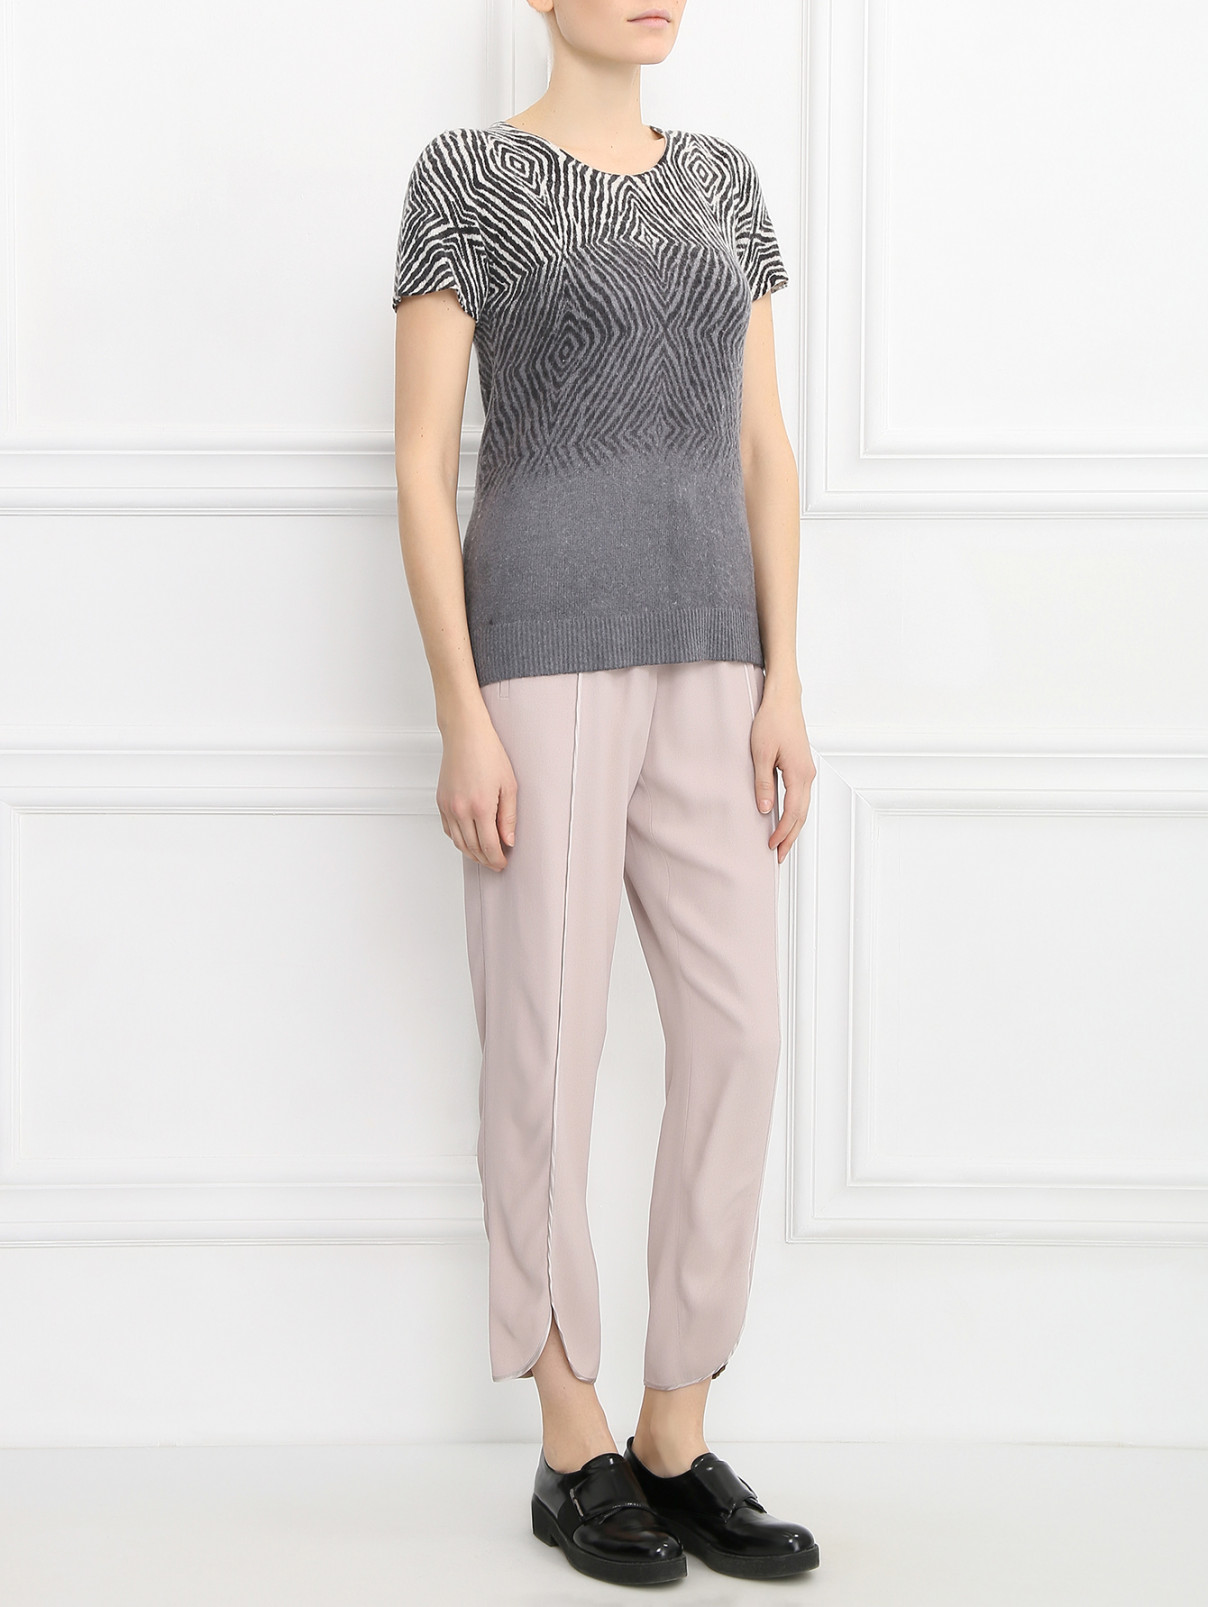 Зауженные брюки на резинке Les Copains  –  Модель Общий вид  – Цвет:  Розовый